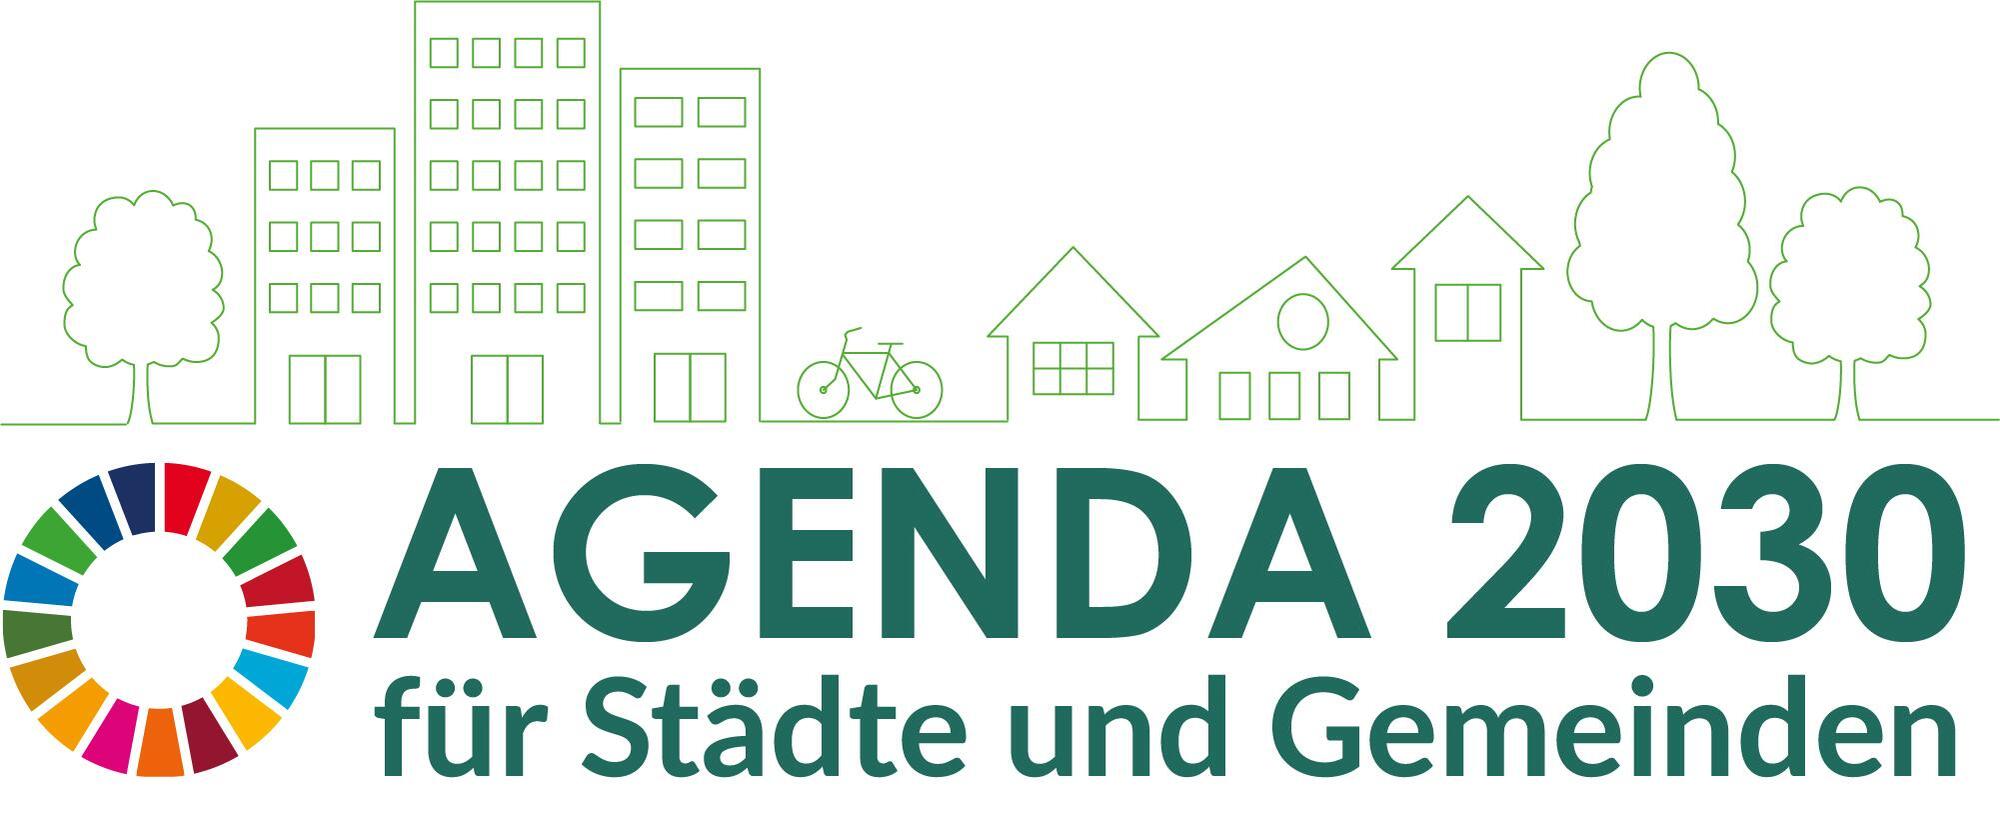 Das Logo der Agenda 2030 Tagung. 